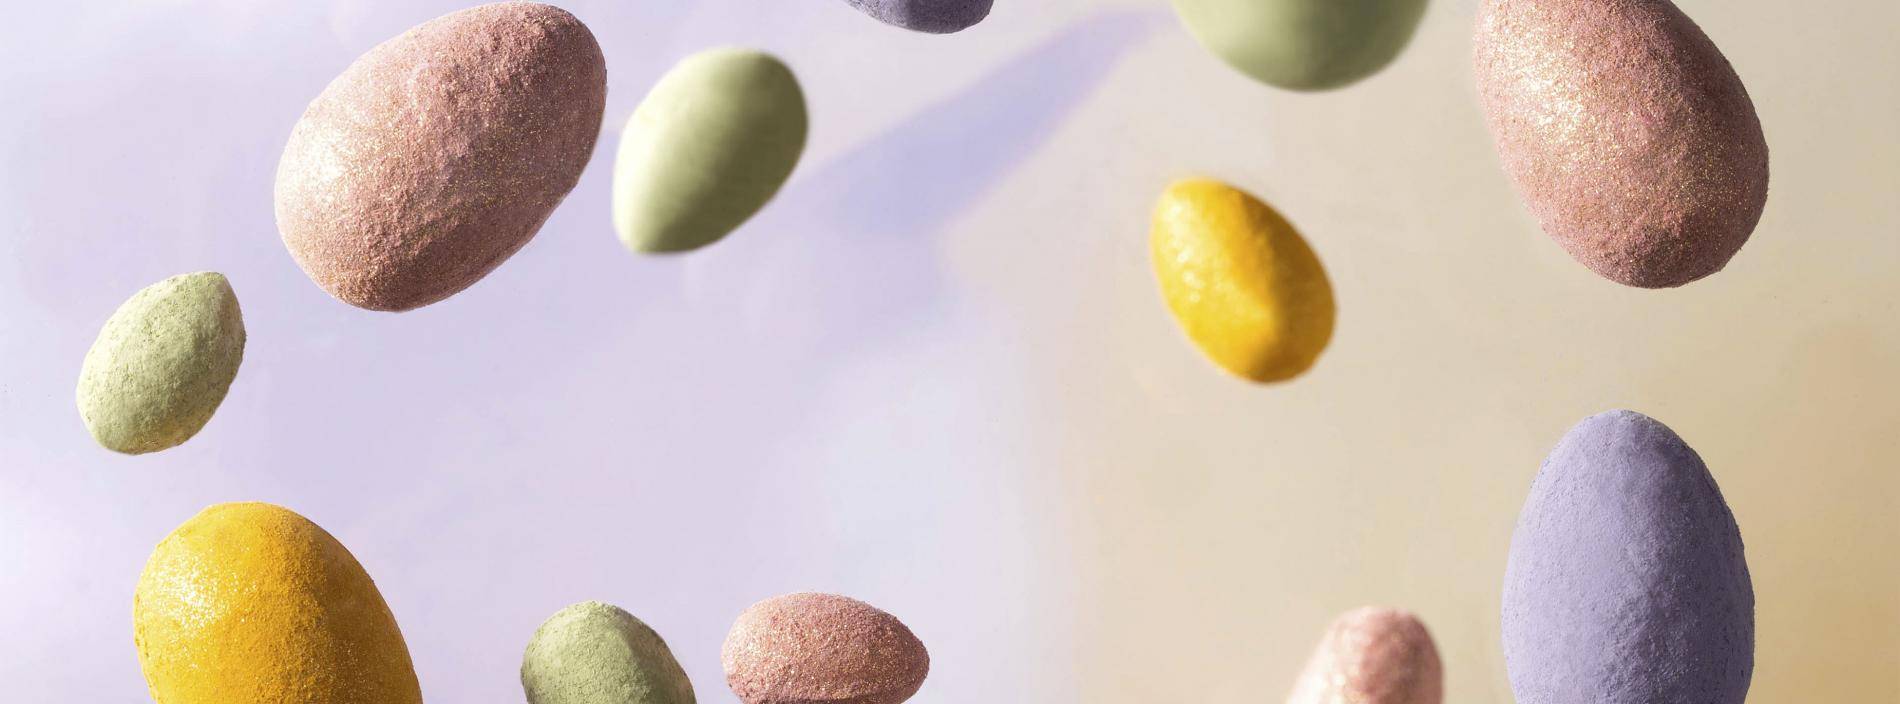 Top 5 Easter 2020 food trends | Barry Callebaut